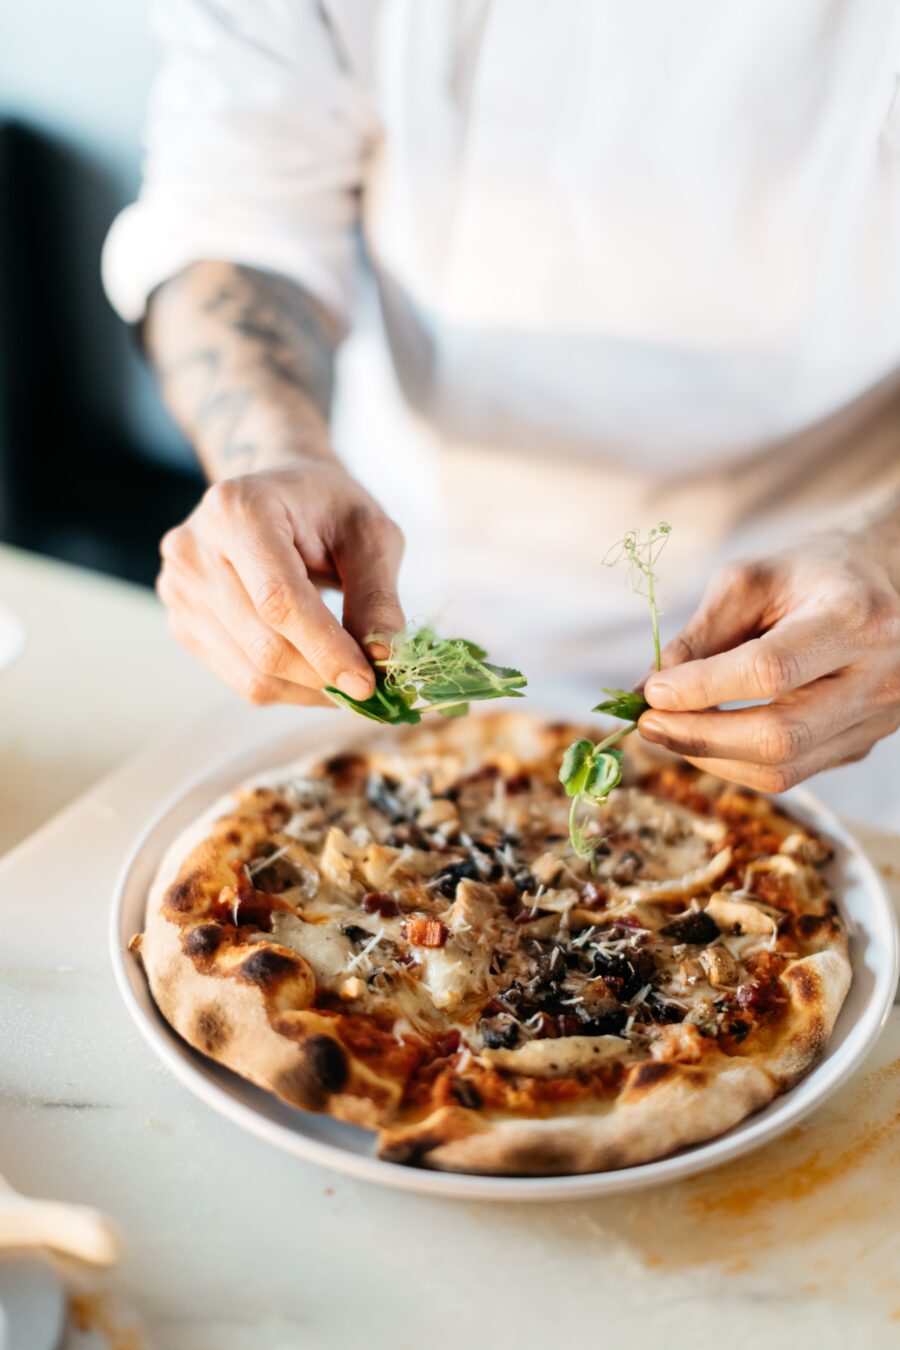 Bilden visar en person som dekorerar en pizza. Pizzaugn, elektrisk variant är ett väldigt bra val för att snabbt komma igång med pizzautbudet i din restaurang.